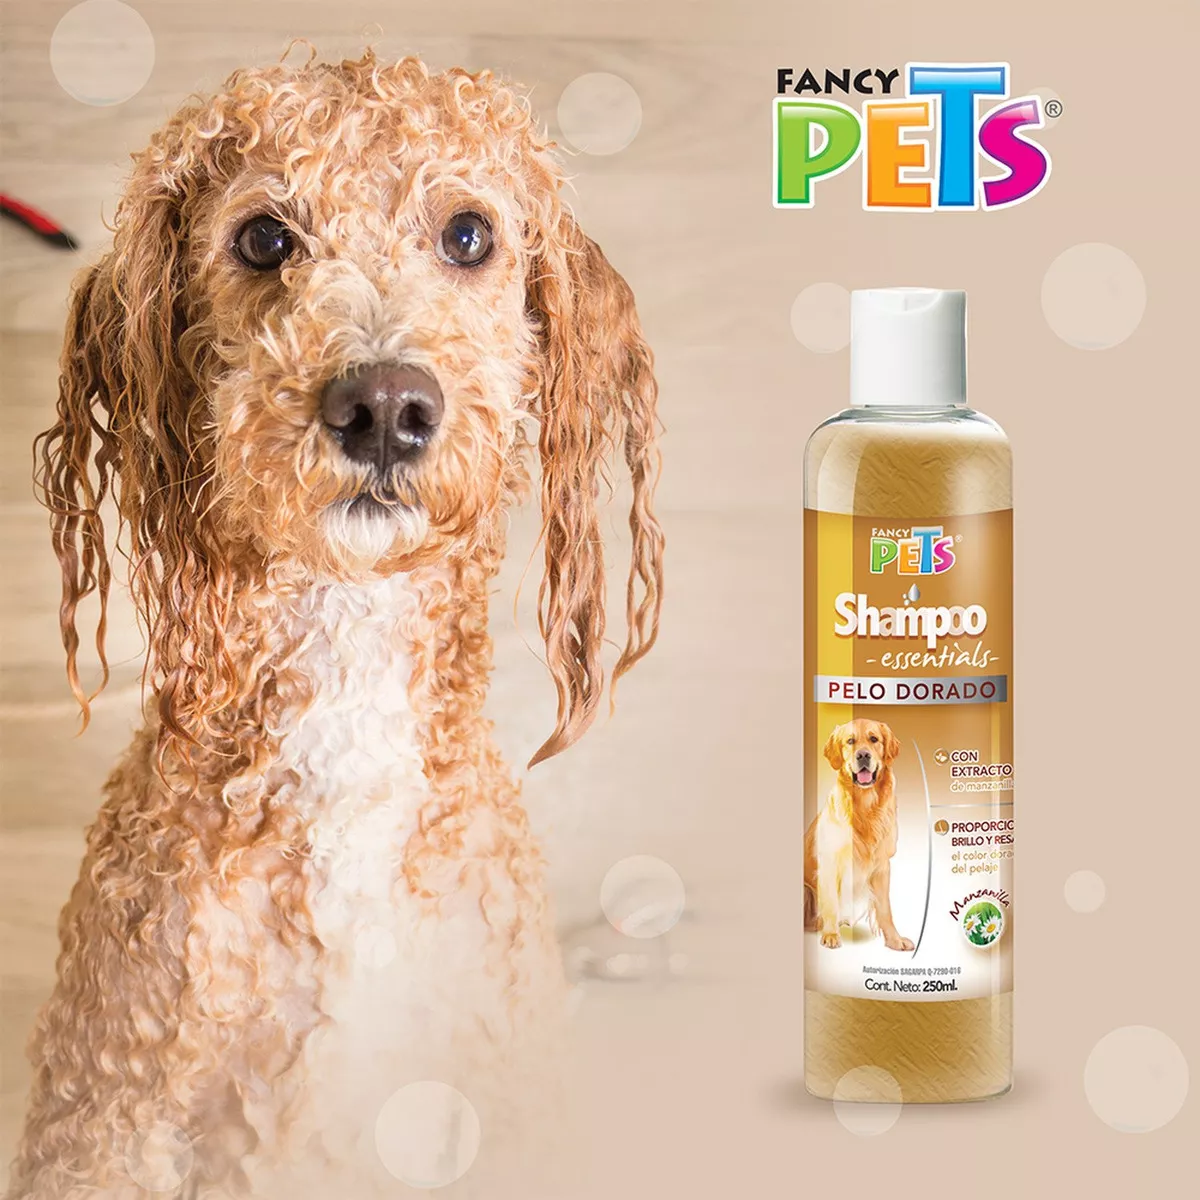 Segunda imagen para búsqueda de shampoo para la sarna en perros